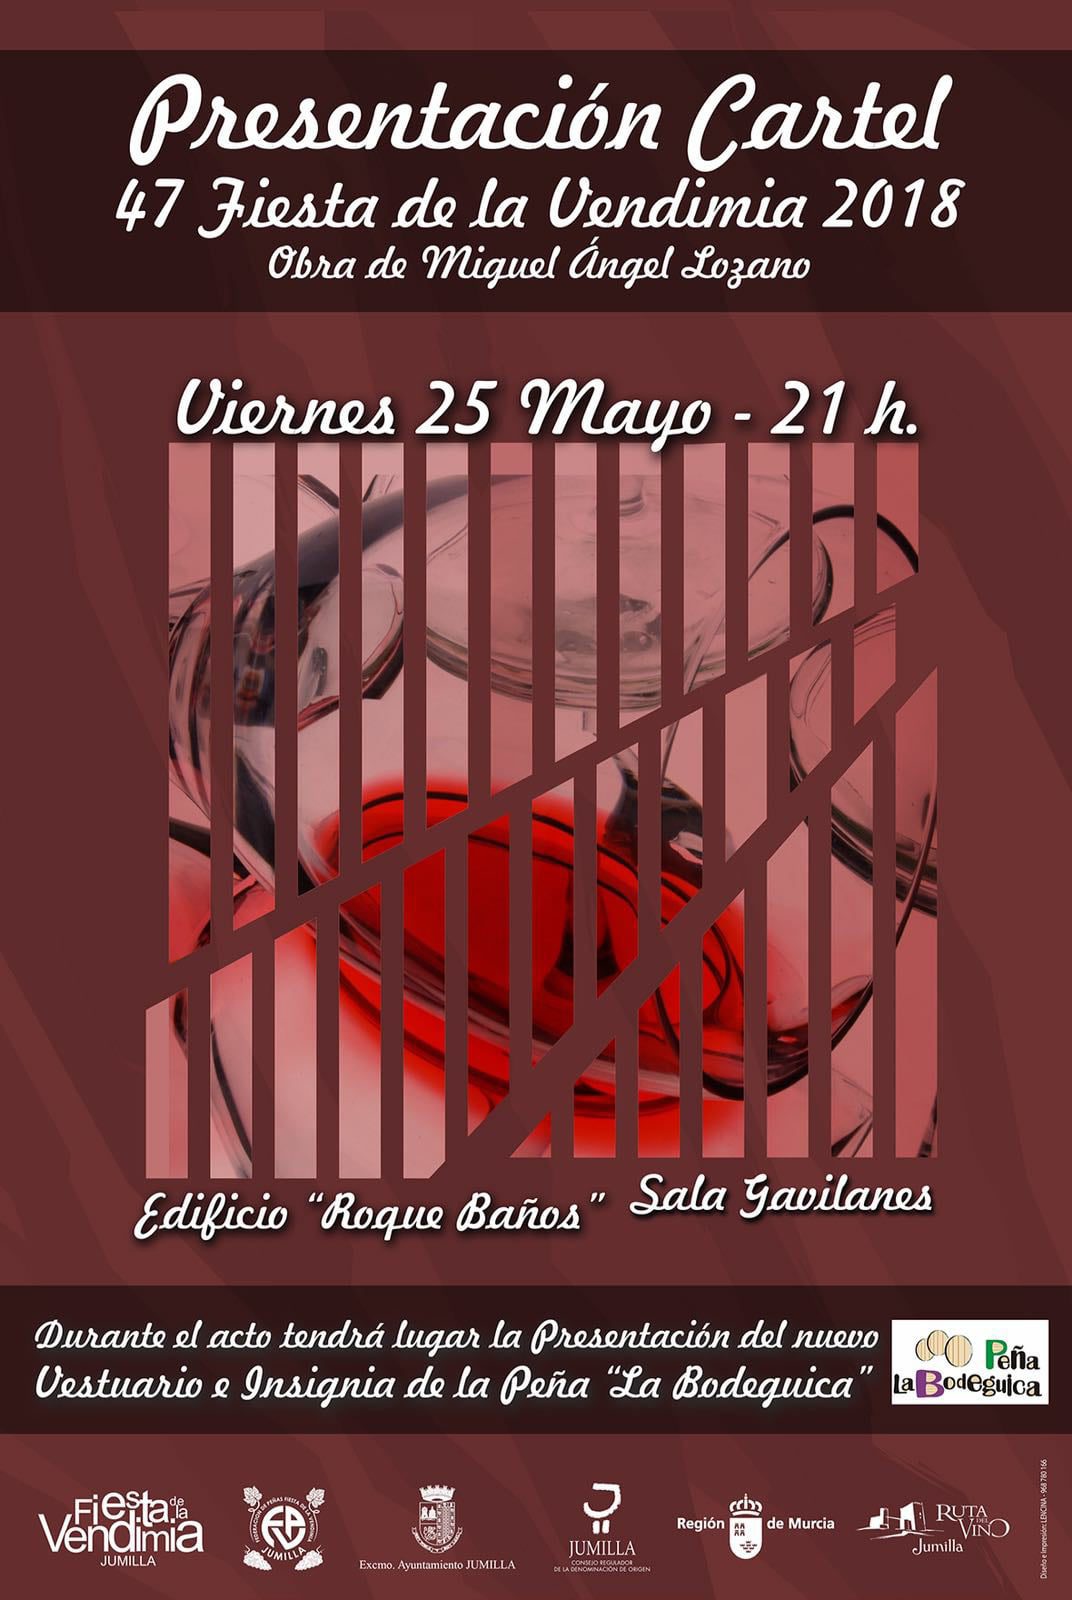 Este viernes se descubrirá el cartel anunciador de la 47 Fiesta de la Vendimia en un acto que se celebrará a las 21:00 horas en el Centro Roque Baños